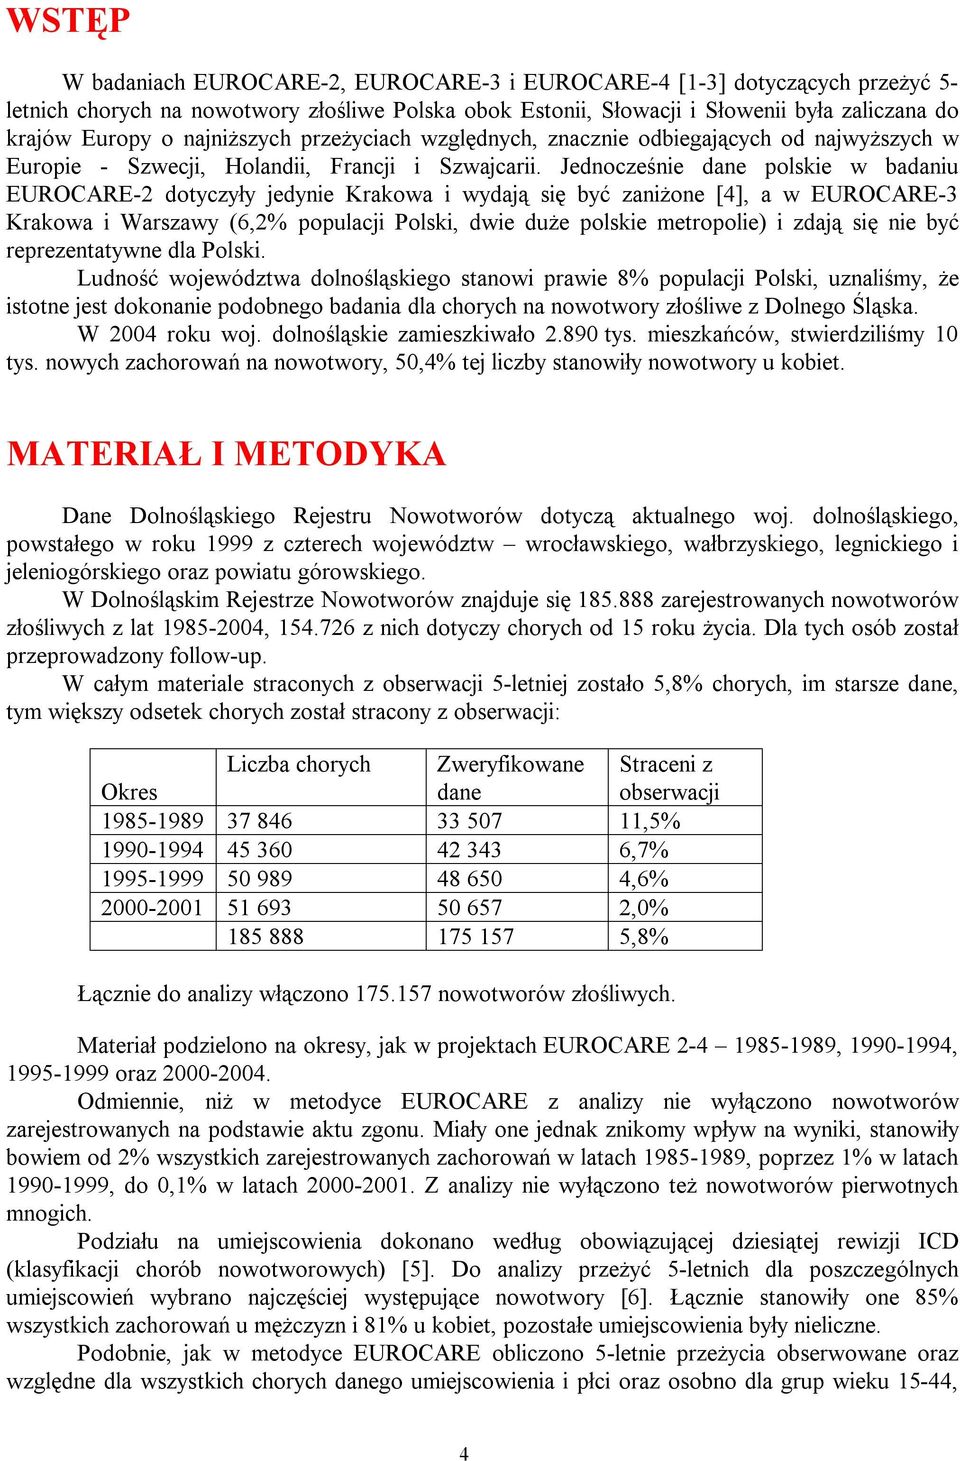 Jednocześnie dane polskie w badaniu EUROCARE-2 dotyczyły jedynie Krakowa i wydają się być zaniżone [4], a w EUROCARE-3 Krakowa i Warszawy (6,2% populacji Polski, dwie duże polskie metropolie) i zdają